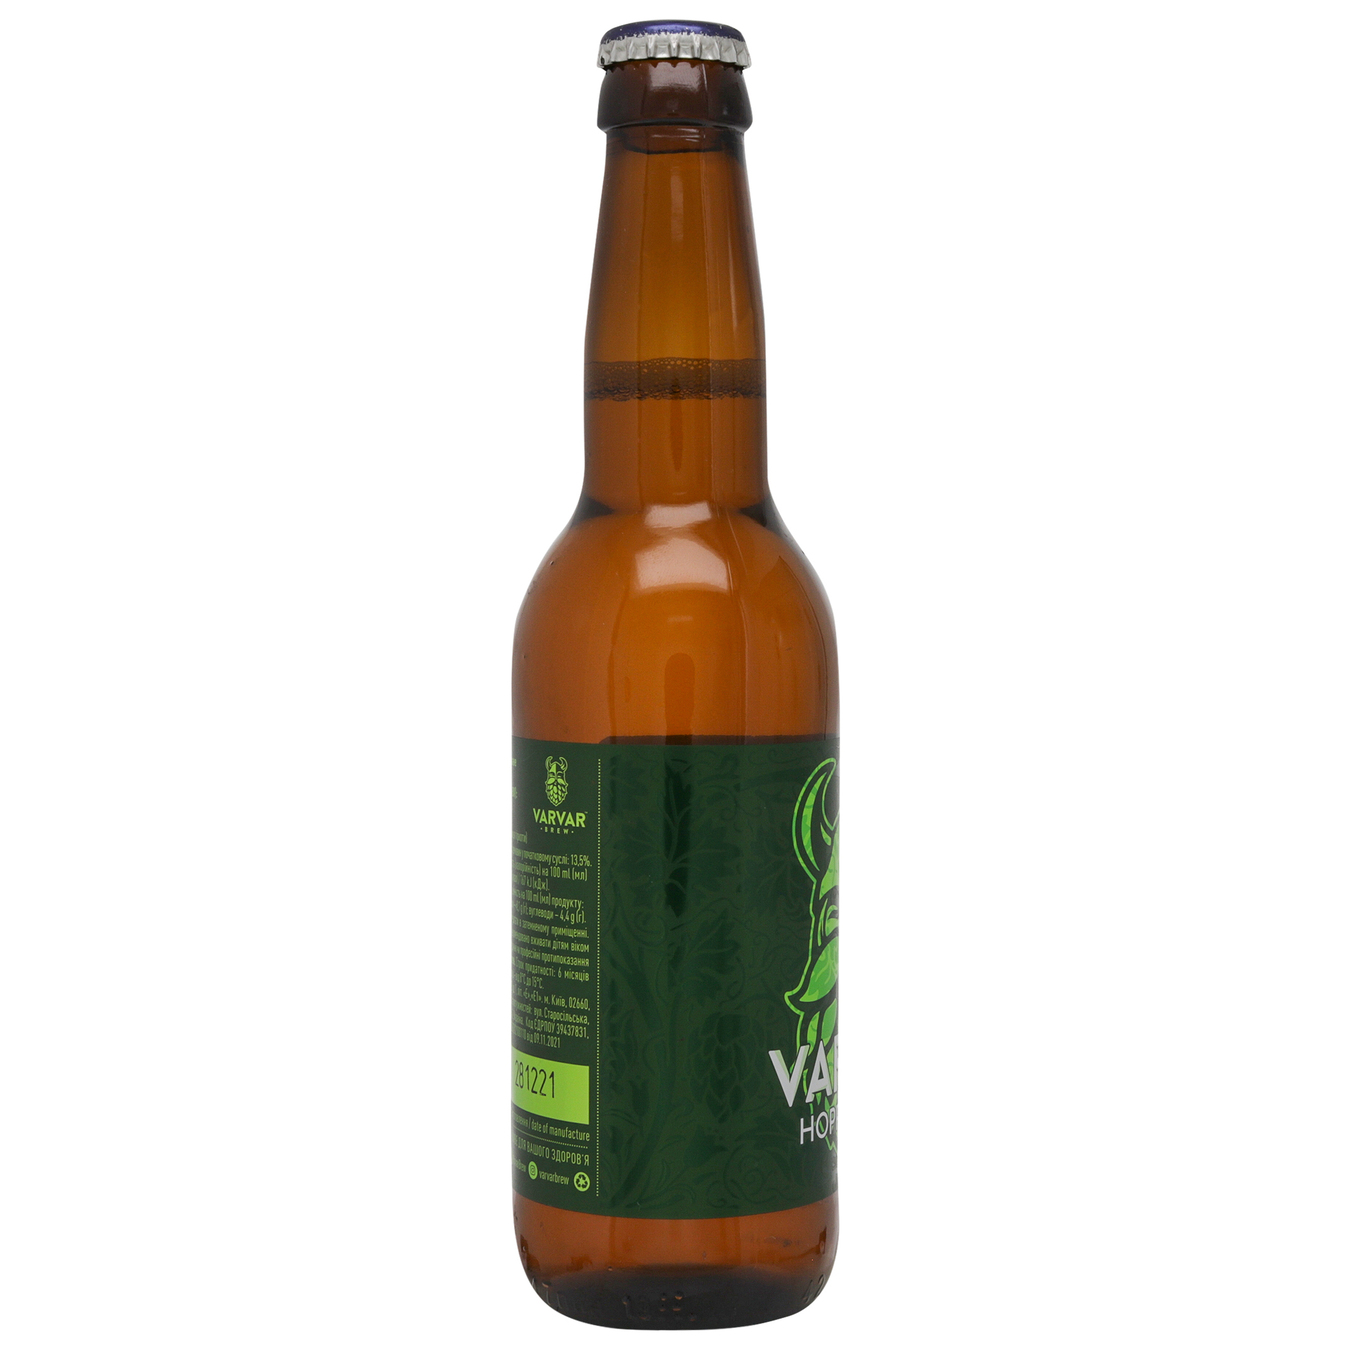 Light beer VARVAR HOPPY LAGER 5.6% 0.33l glass bottle 4